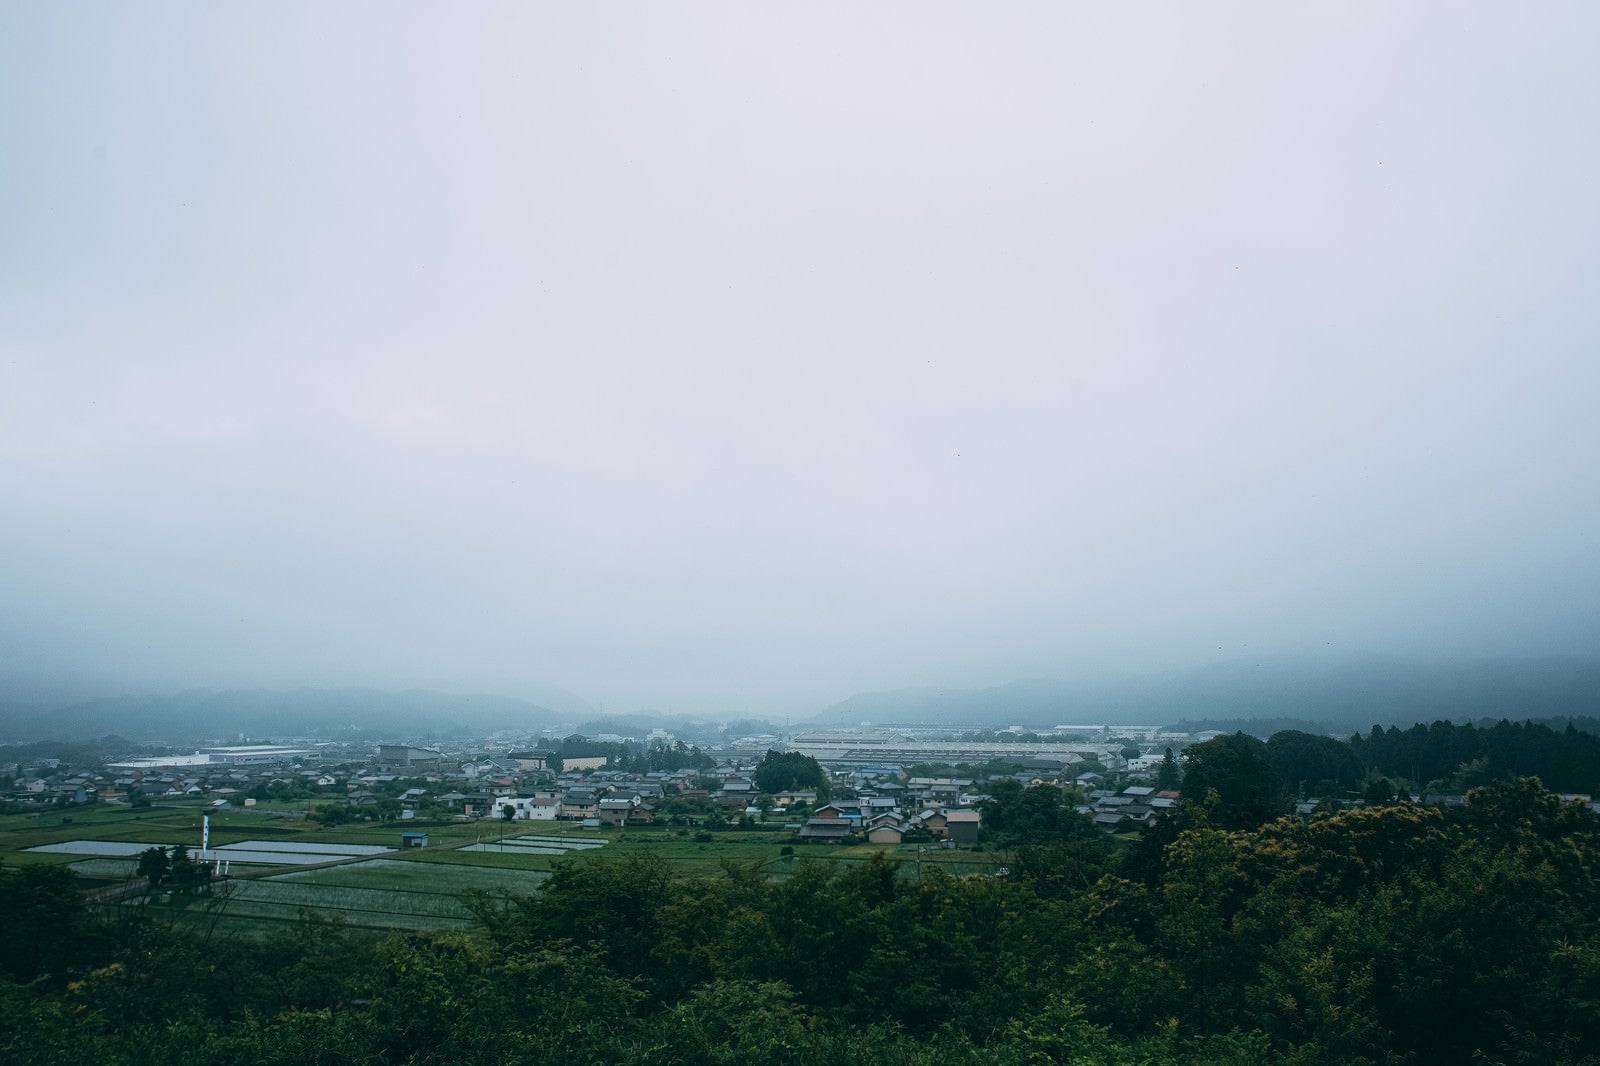 「笹尾山展望デッキから、雨で霞む現在の関ケ原を眺める」の写真